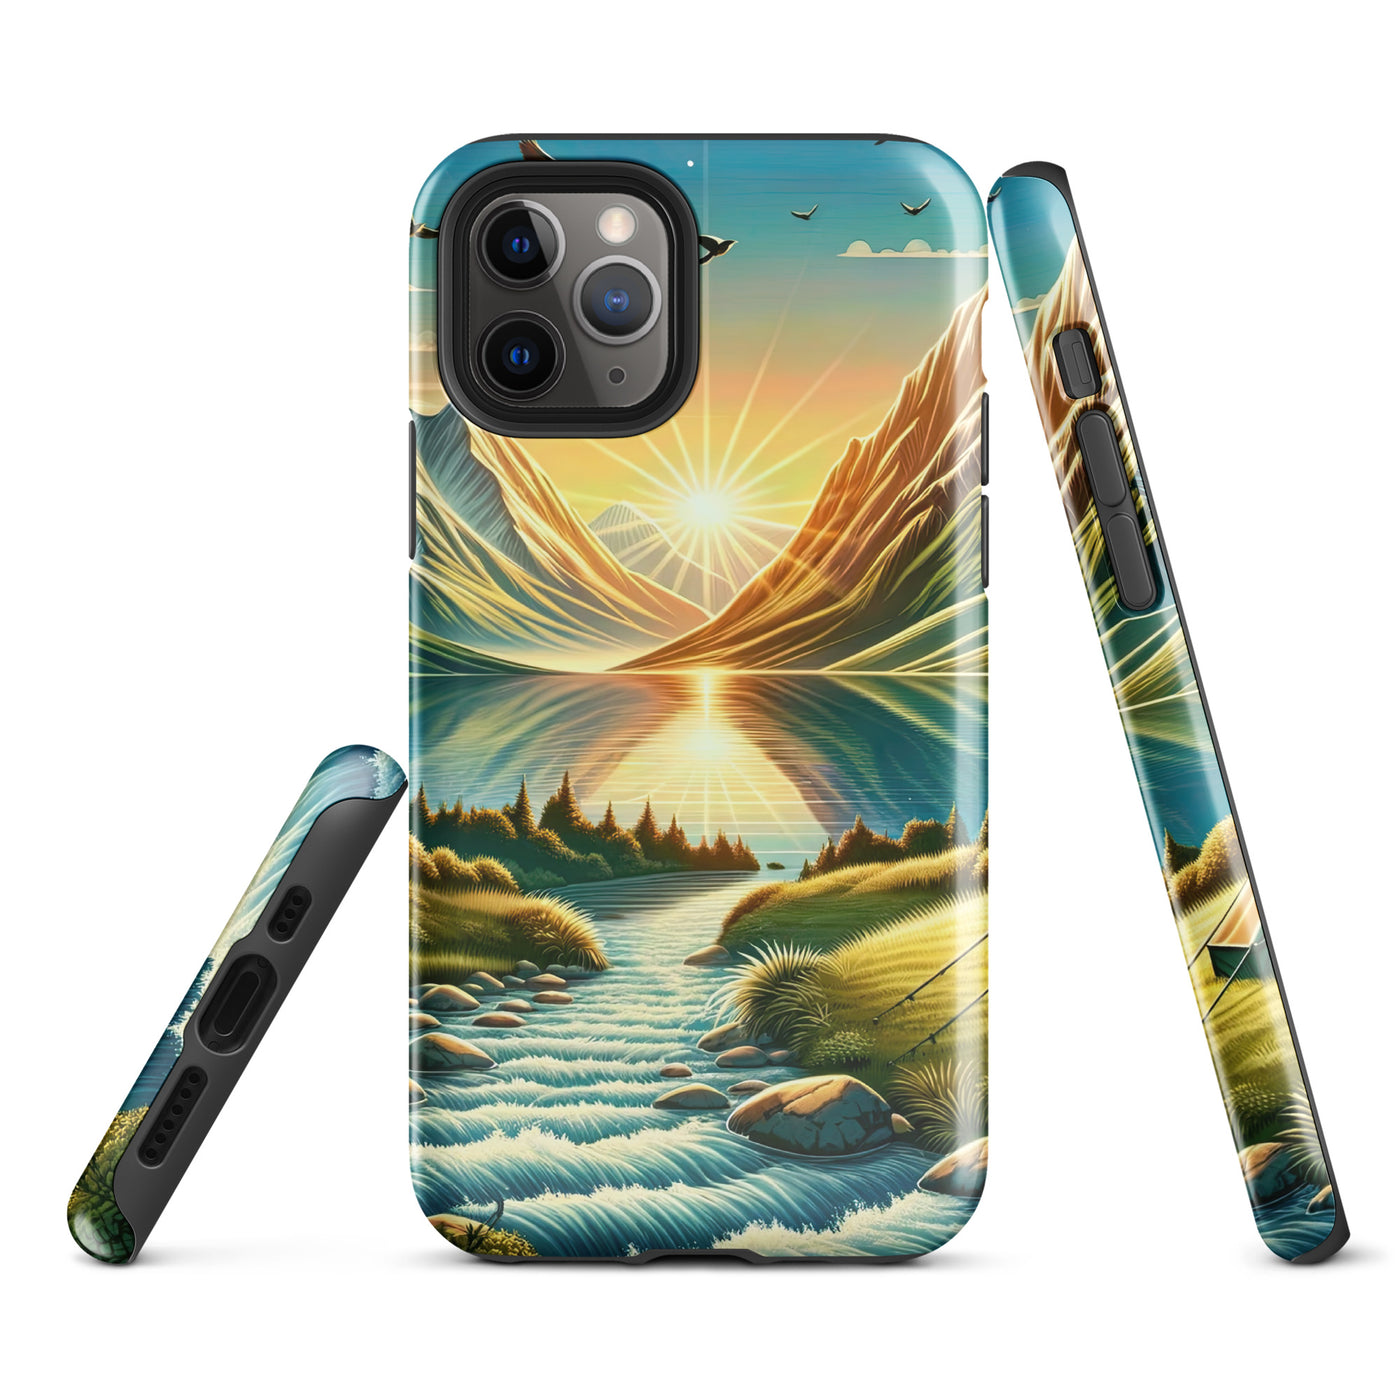 Zelt im Alpenmorgen mit goldenem Licht, Schneebergen und unberührten Seen - iPhone Schutzhülle (robust) berge xxx yyy zzz iPhone 11 Pro